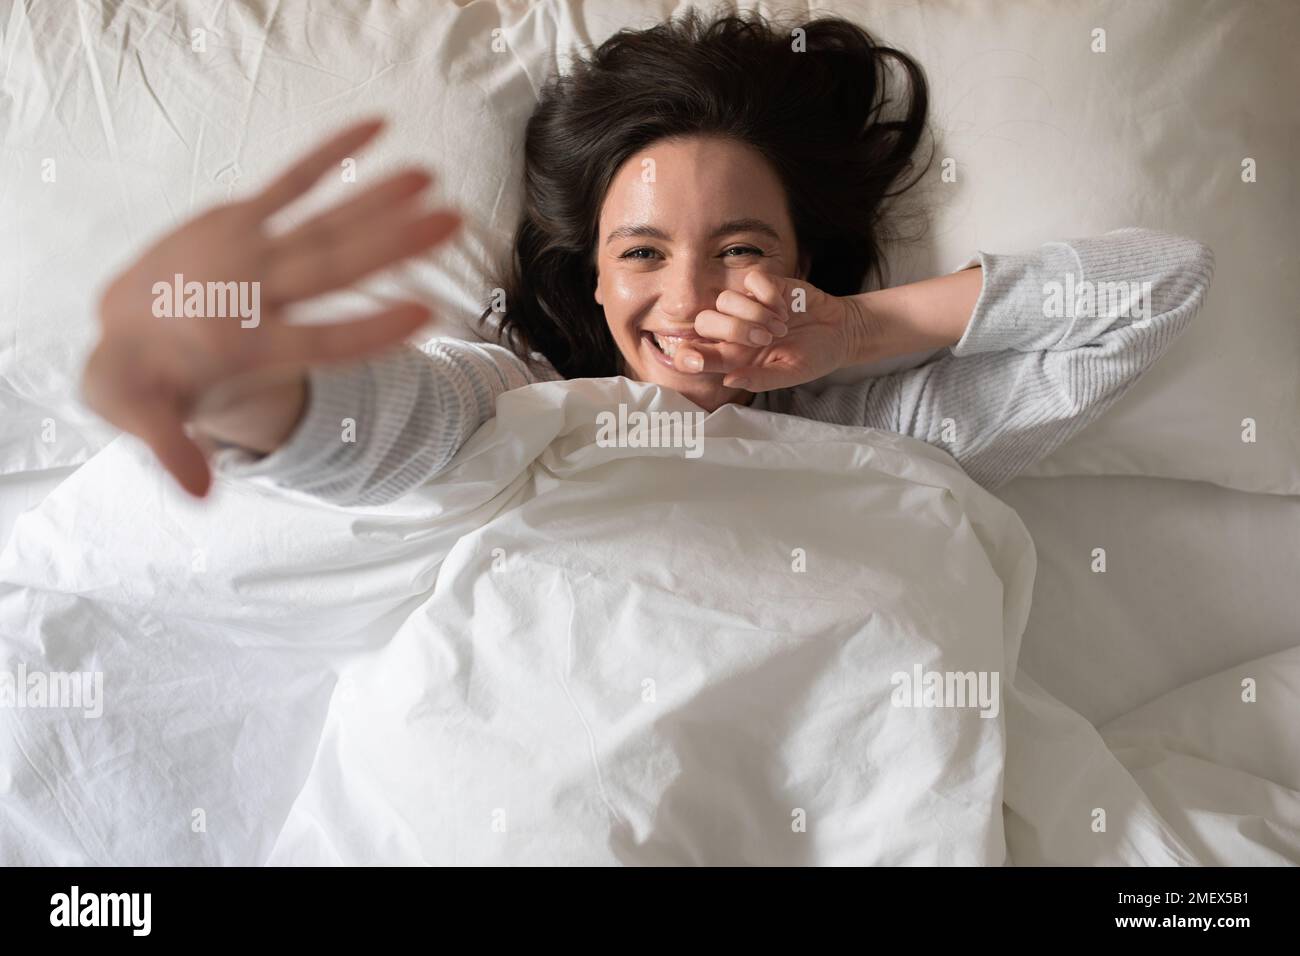 Allegra bella giovane donna europea si sveglia, ondeggia la mano o si chiude dalla macchina fotografica, si trova su un letto bianco Foto Stock